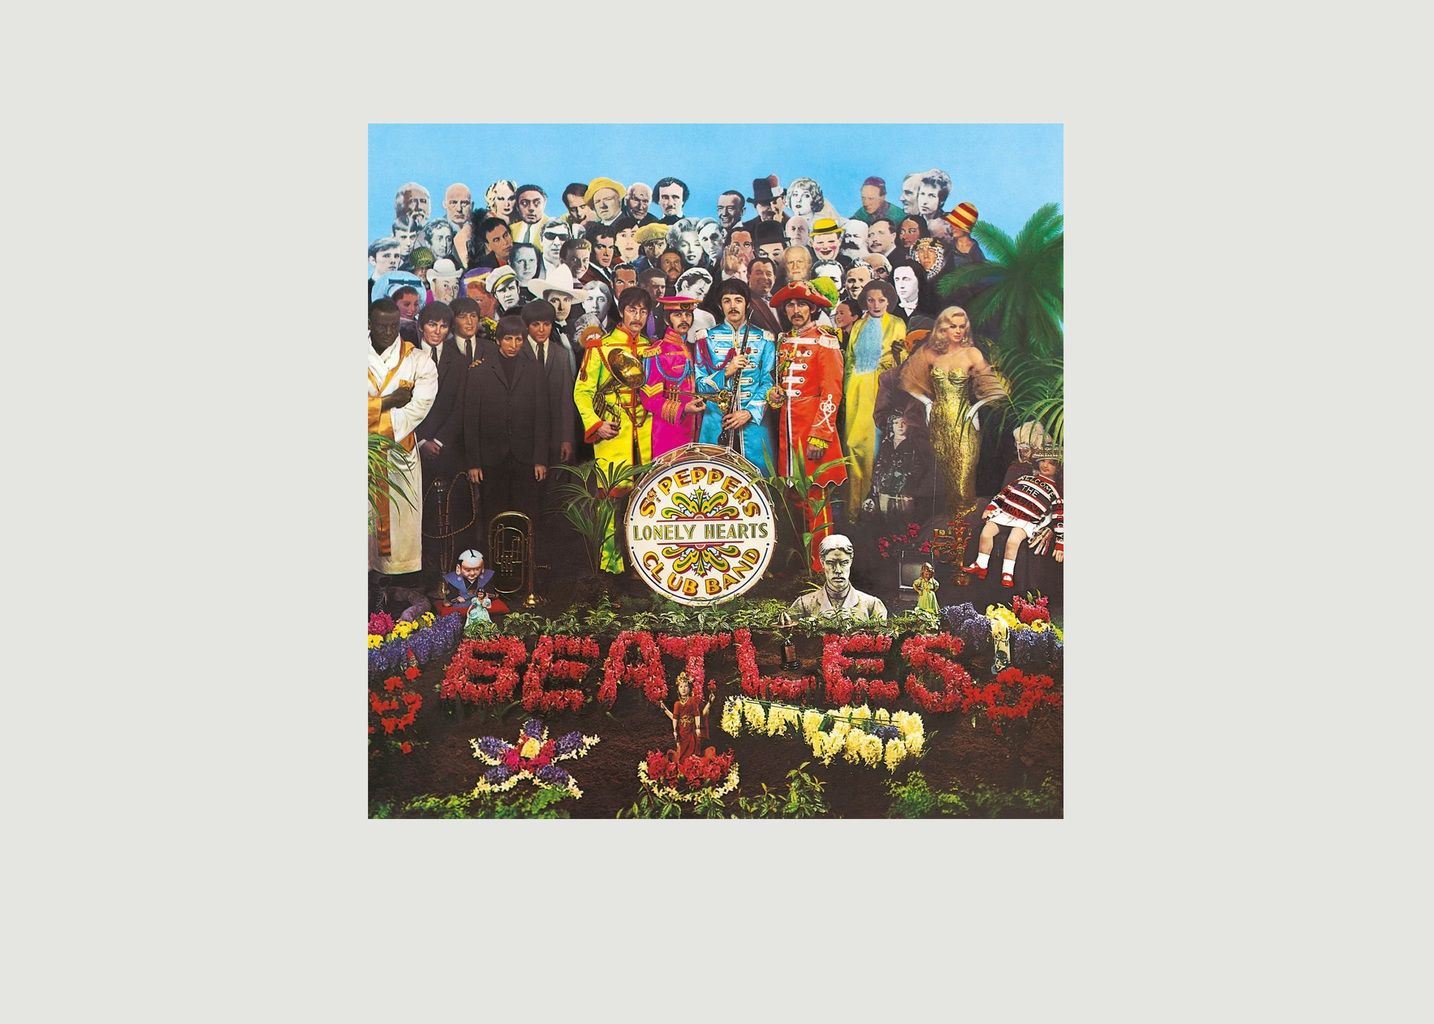 Sgt. Pepper's Lonely Hearts Club Band - Die Beatles - La vinyl-thèque idéale